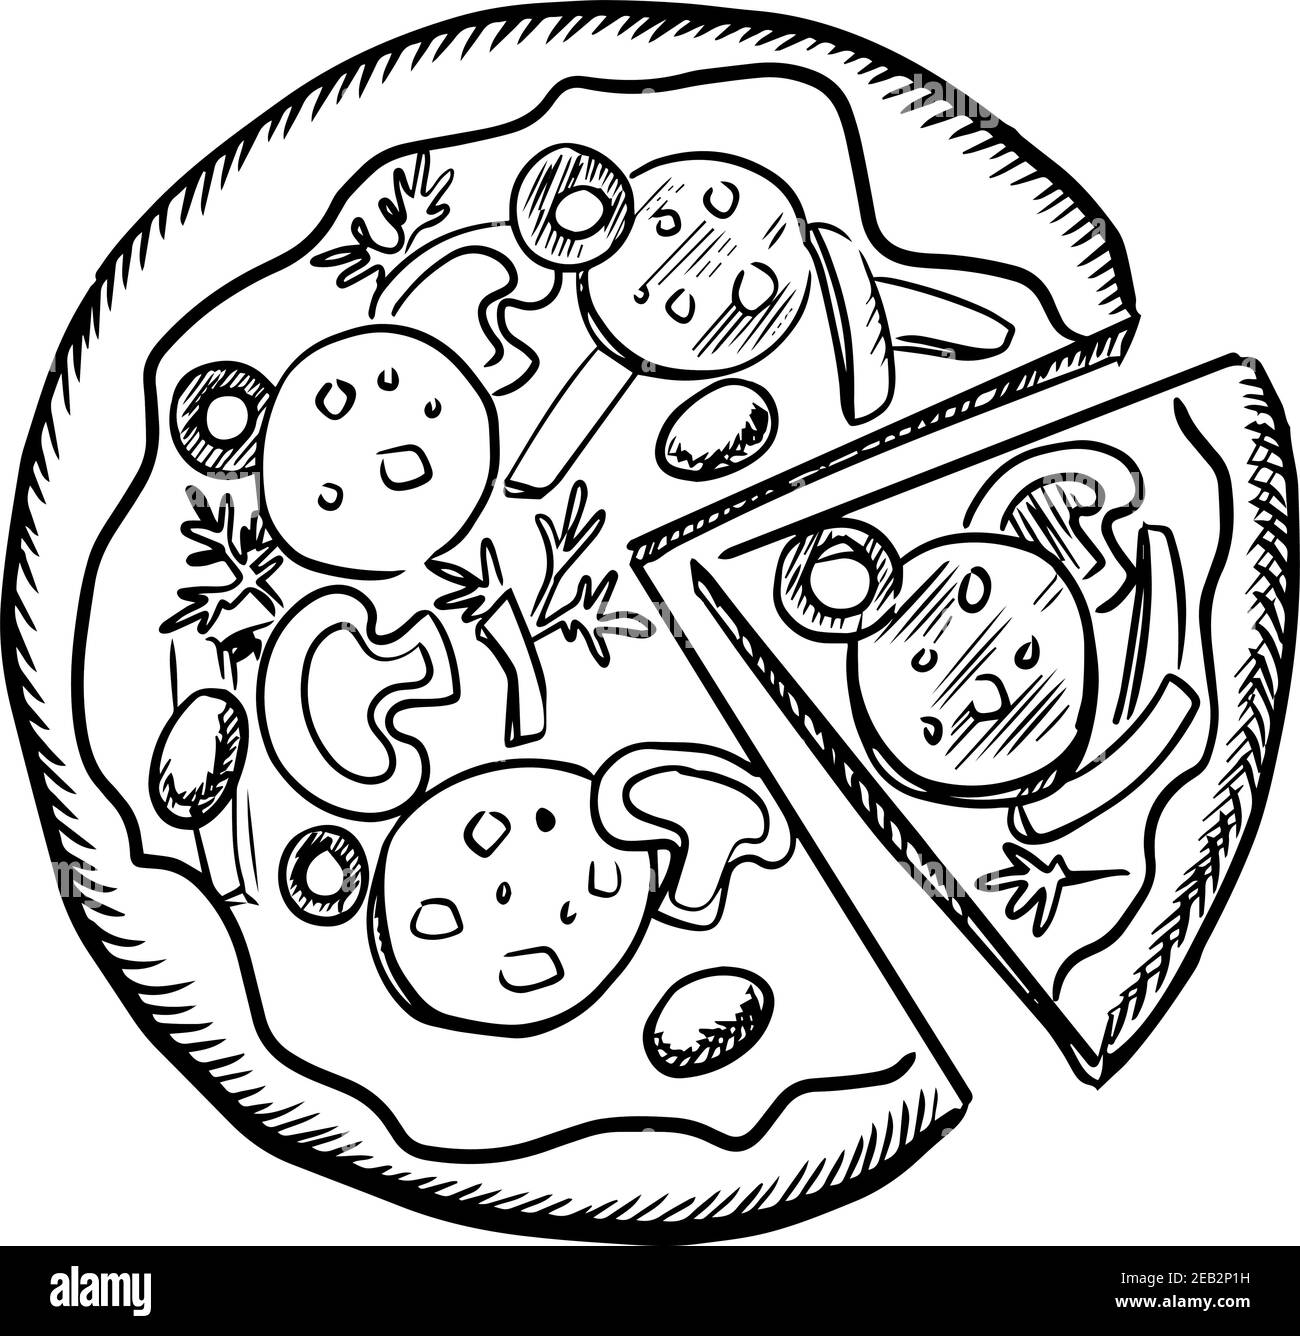 Skizze der Fast-Food-Pizza mit Salami, Pilzen, Oliven, Zwiebeln und Paprika Scheiben, gewürzt mit Petersilie. Isoliert auf weißem Hintergrund Stock Vektor